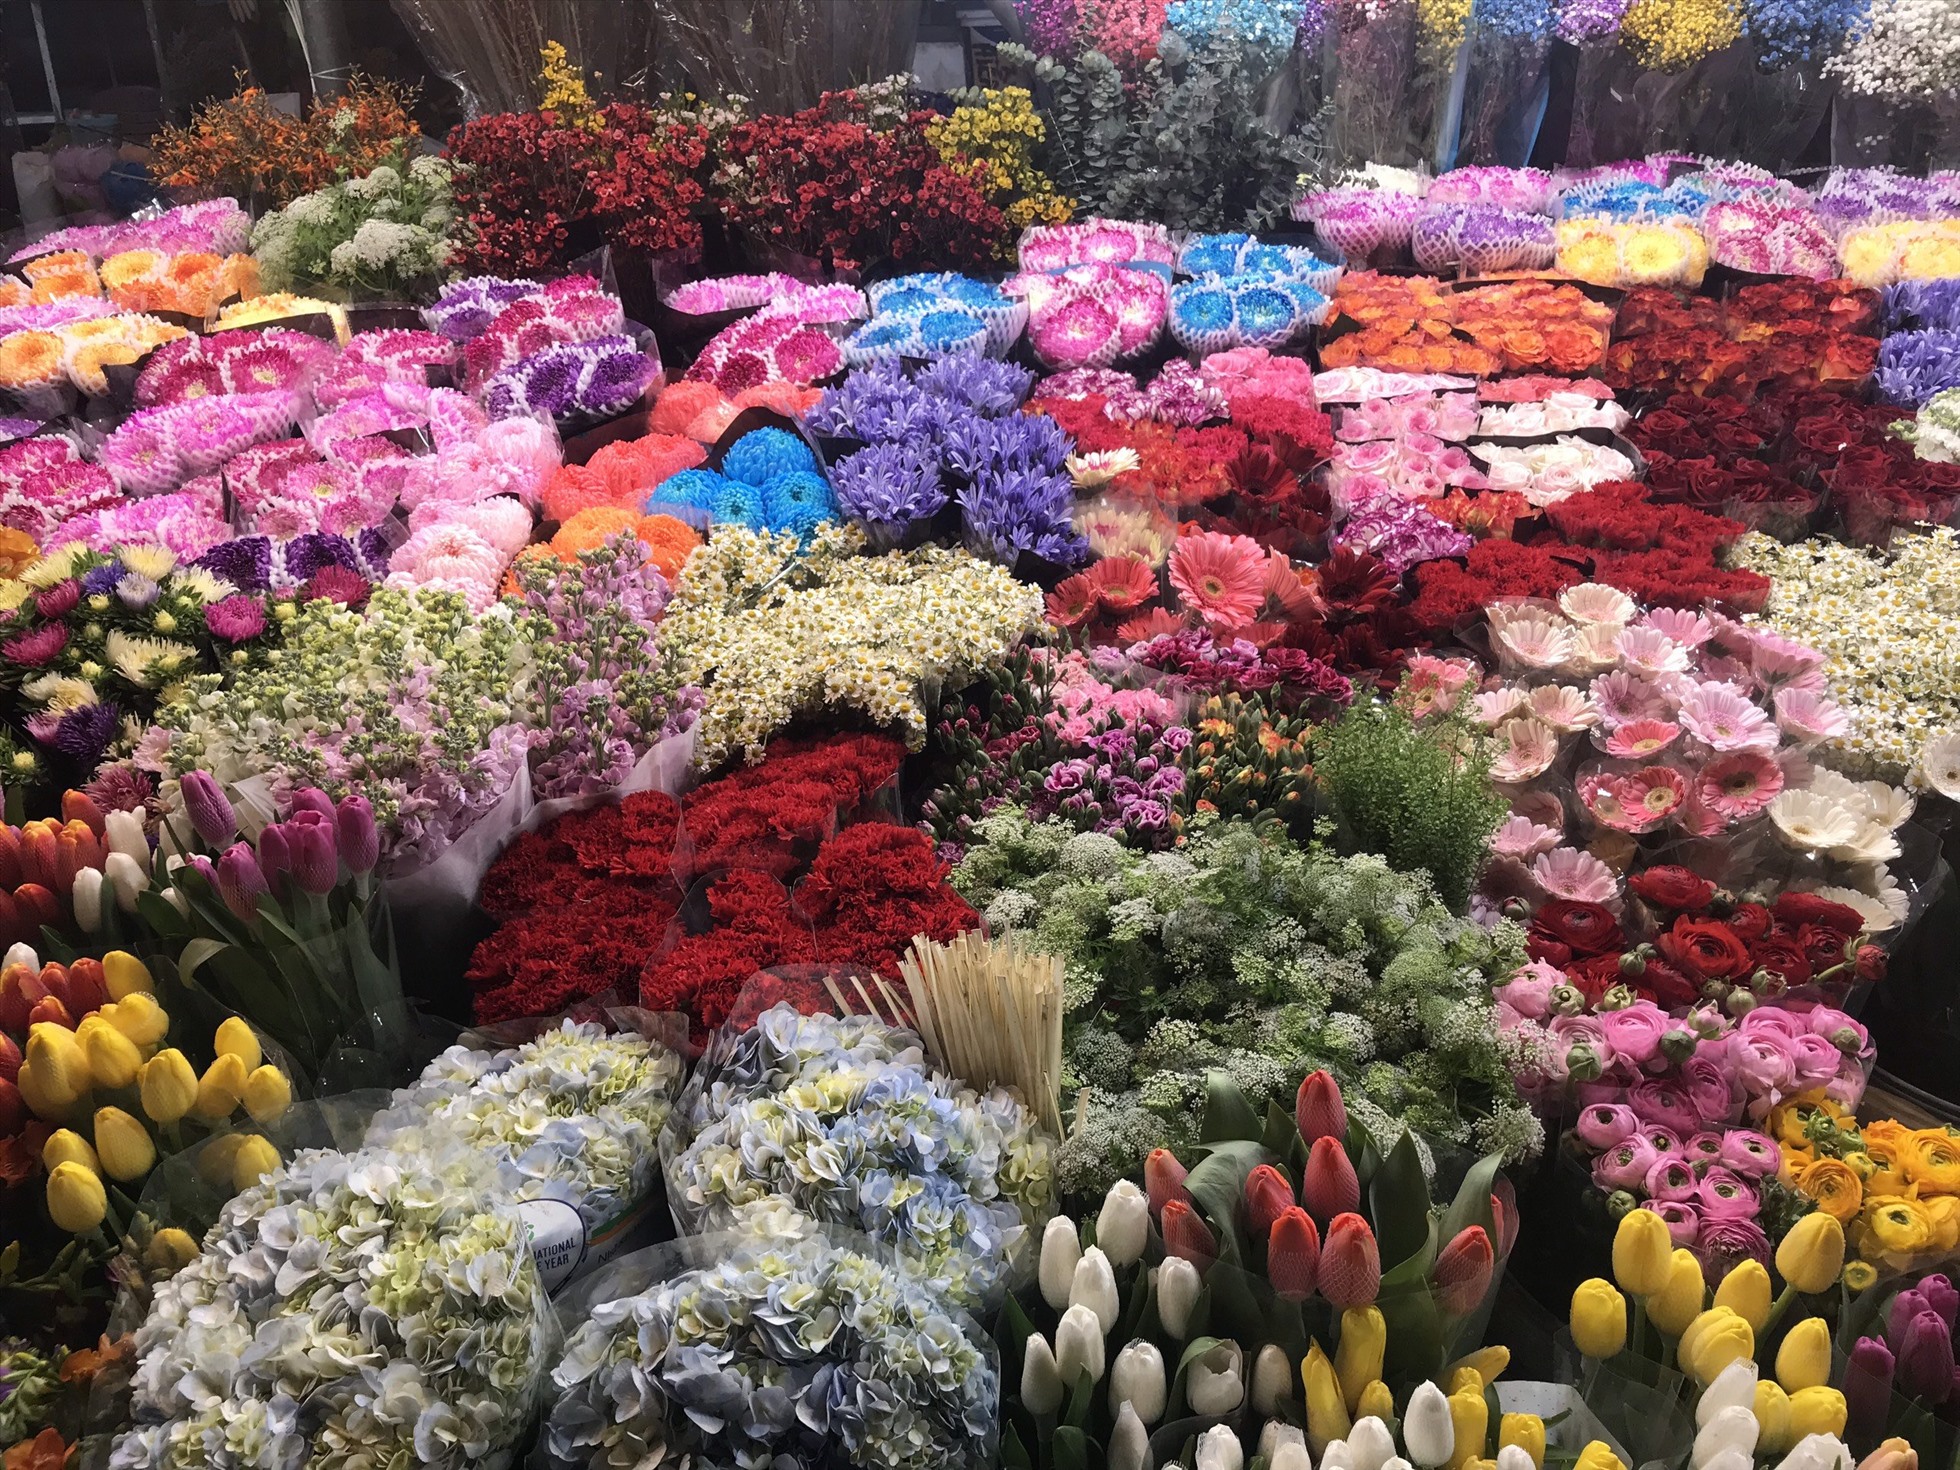 Vô vàn loài hoa khác nhau như: hoa hồng, hoa huệ, hoa cúc... khoe sắc ở chợ hoa Quảng Bá. Ảnh: Cẩm Tú